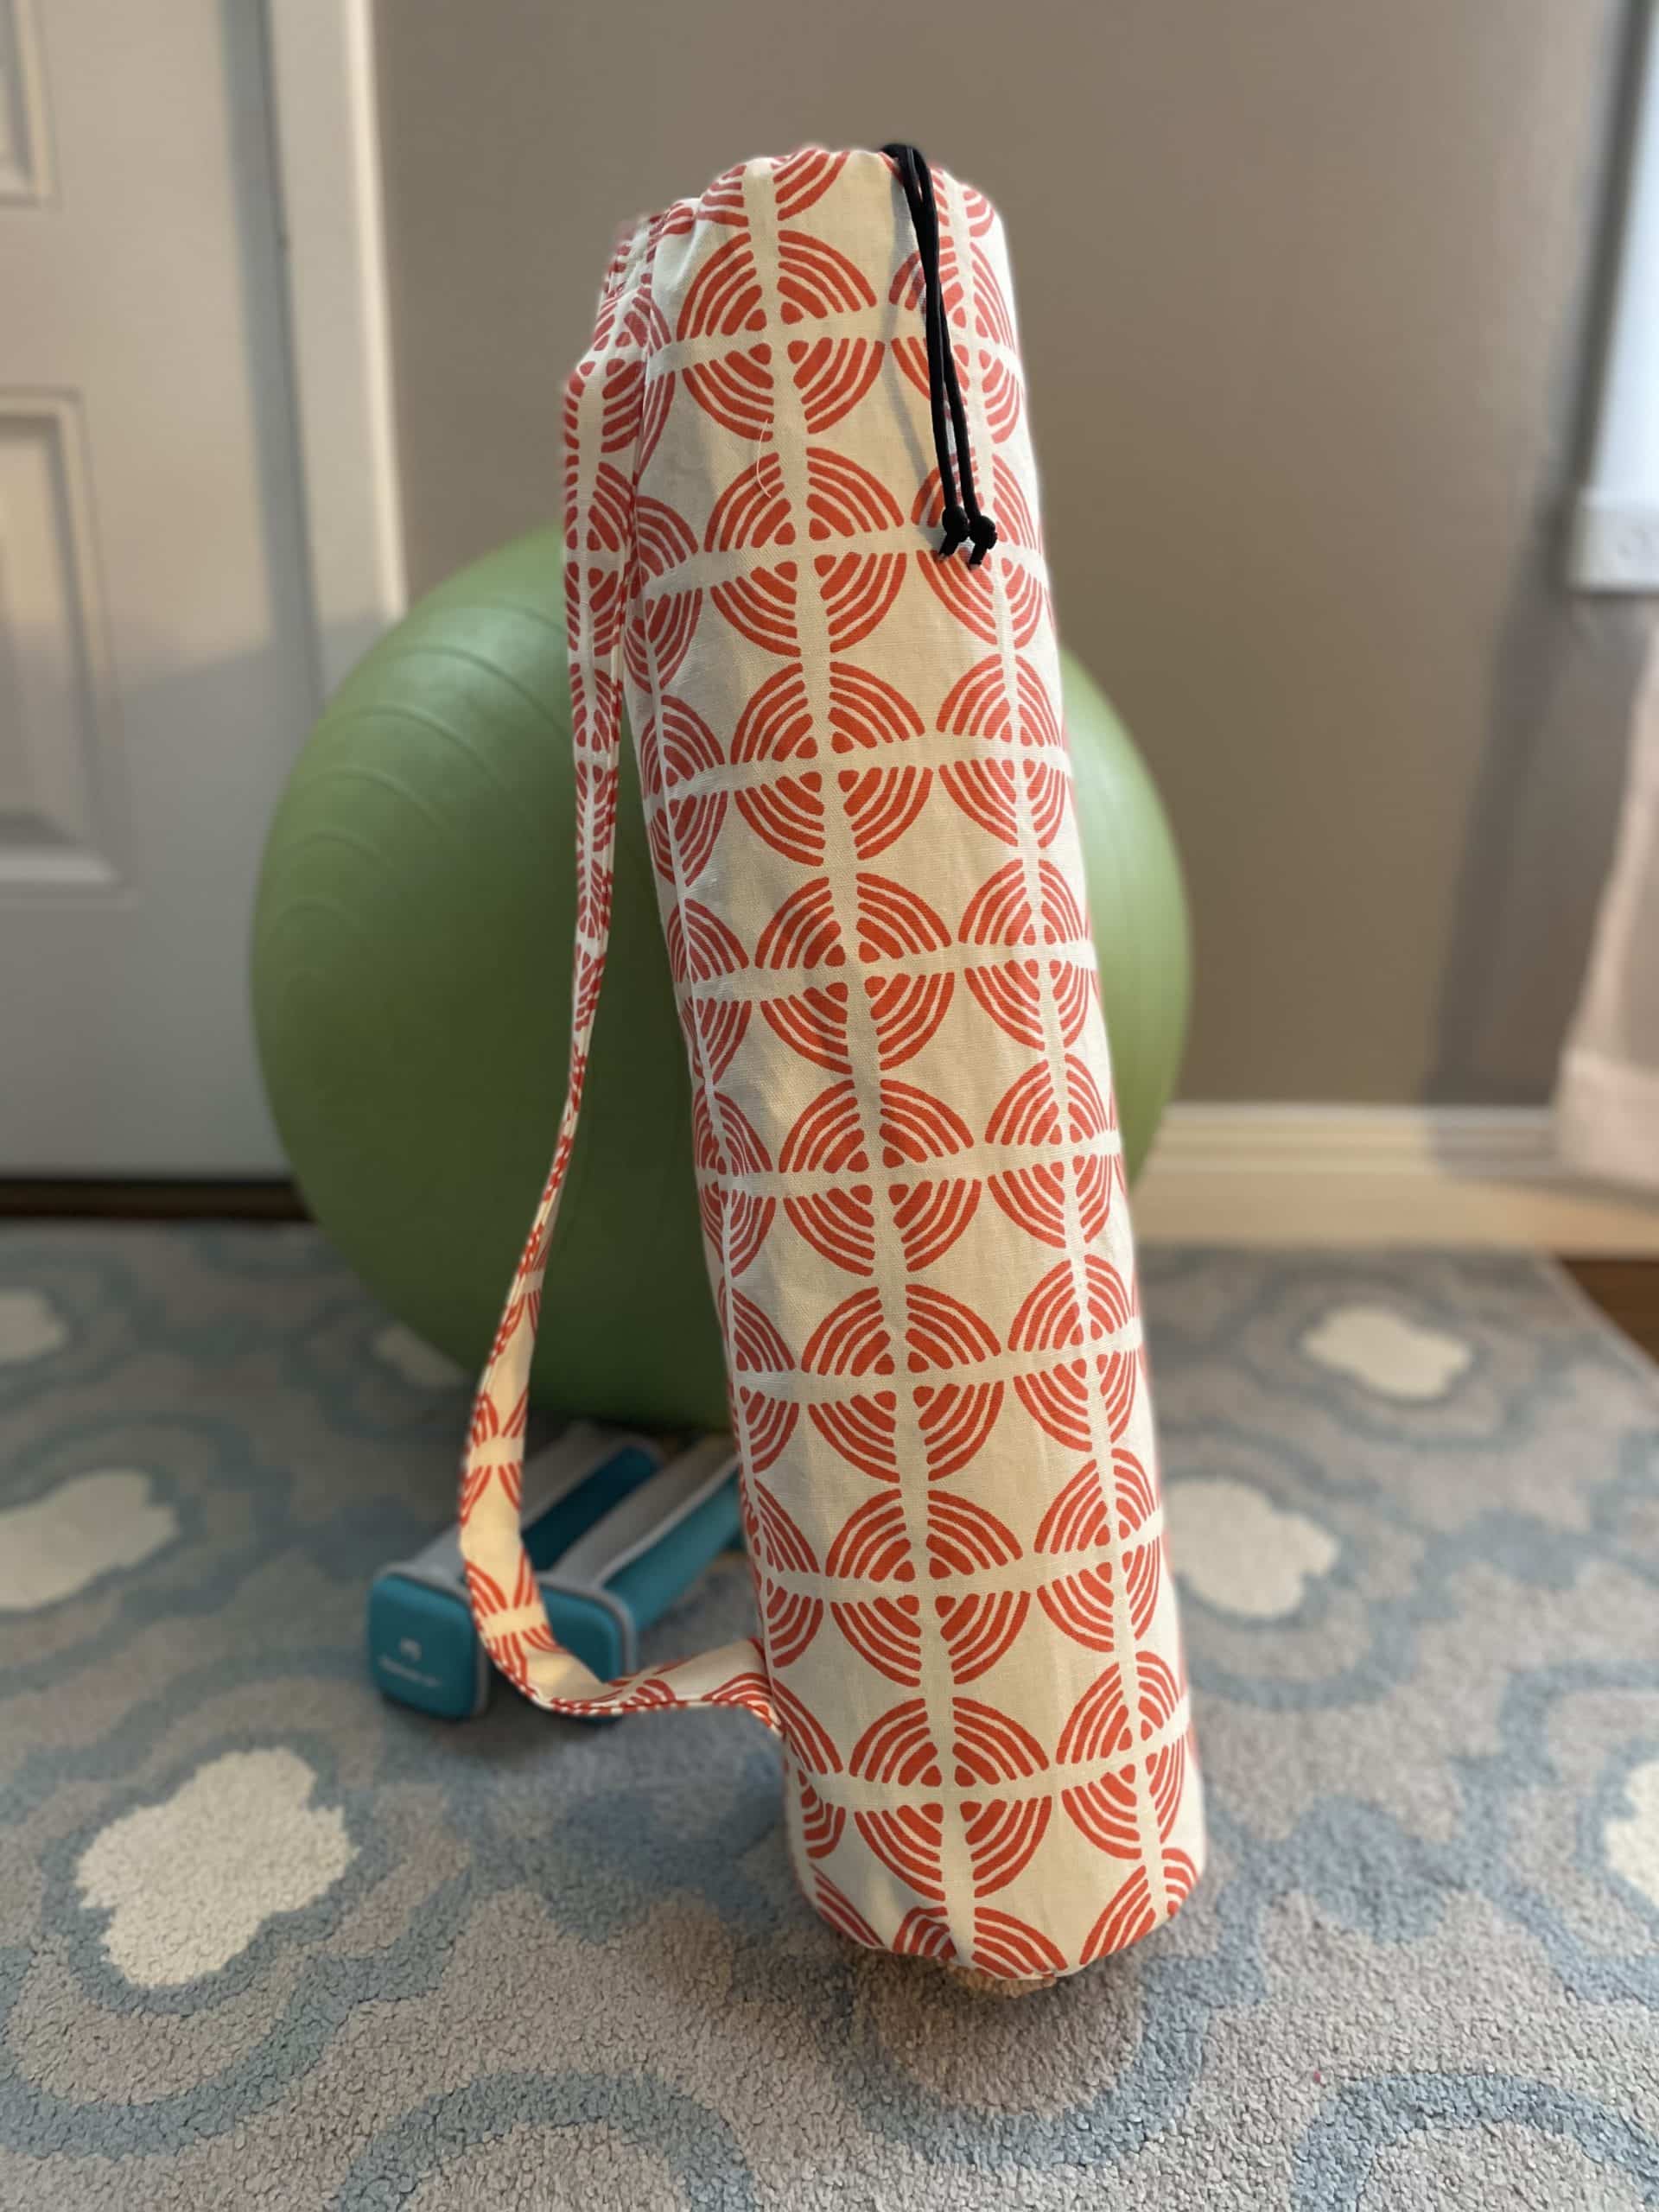 How-To: Simple DIY Yoga Mat Bag - Make